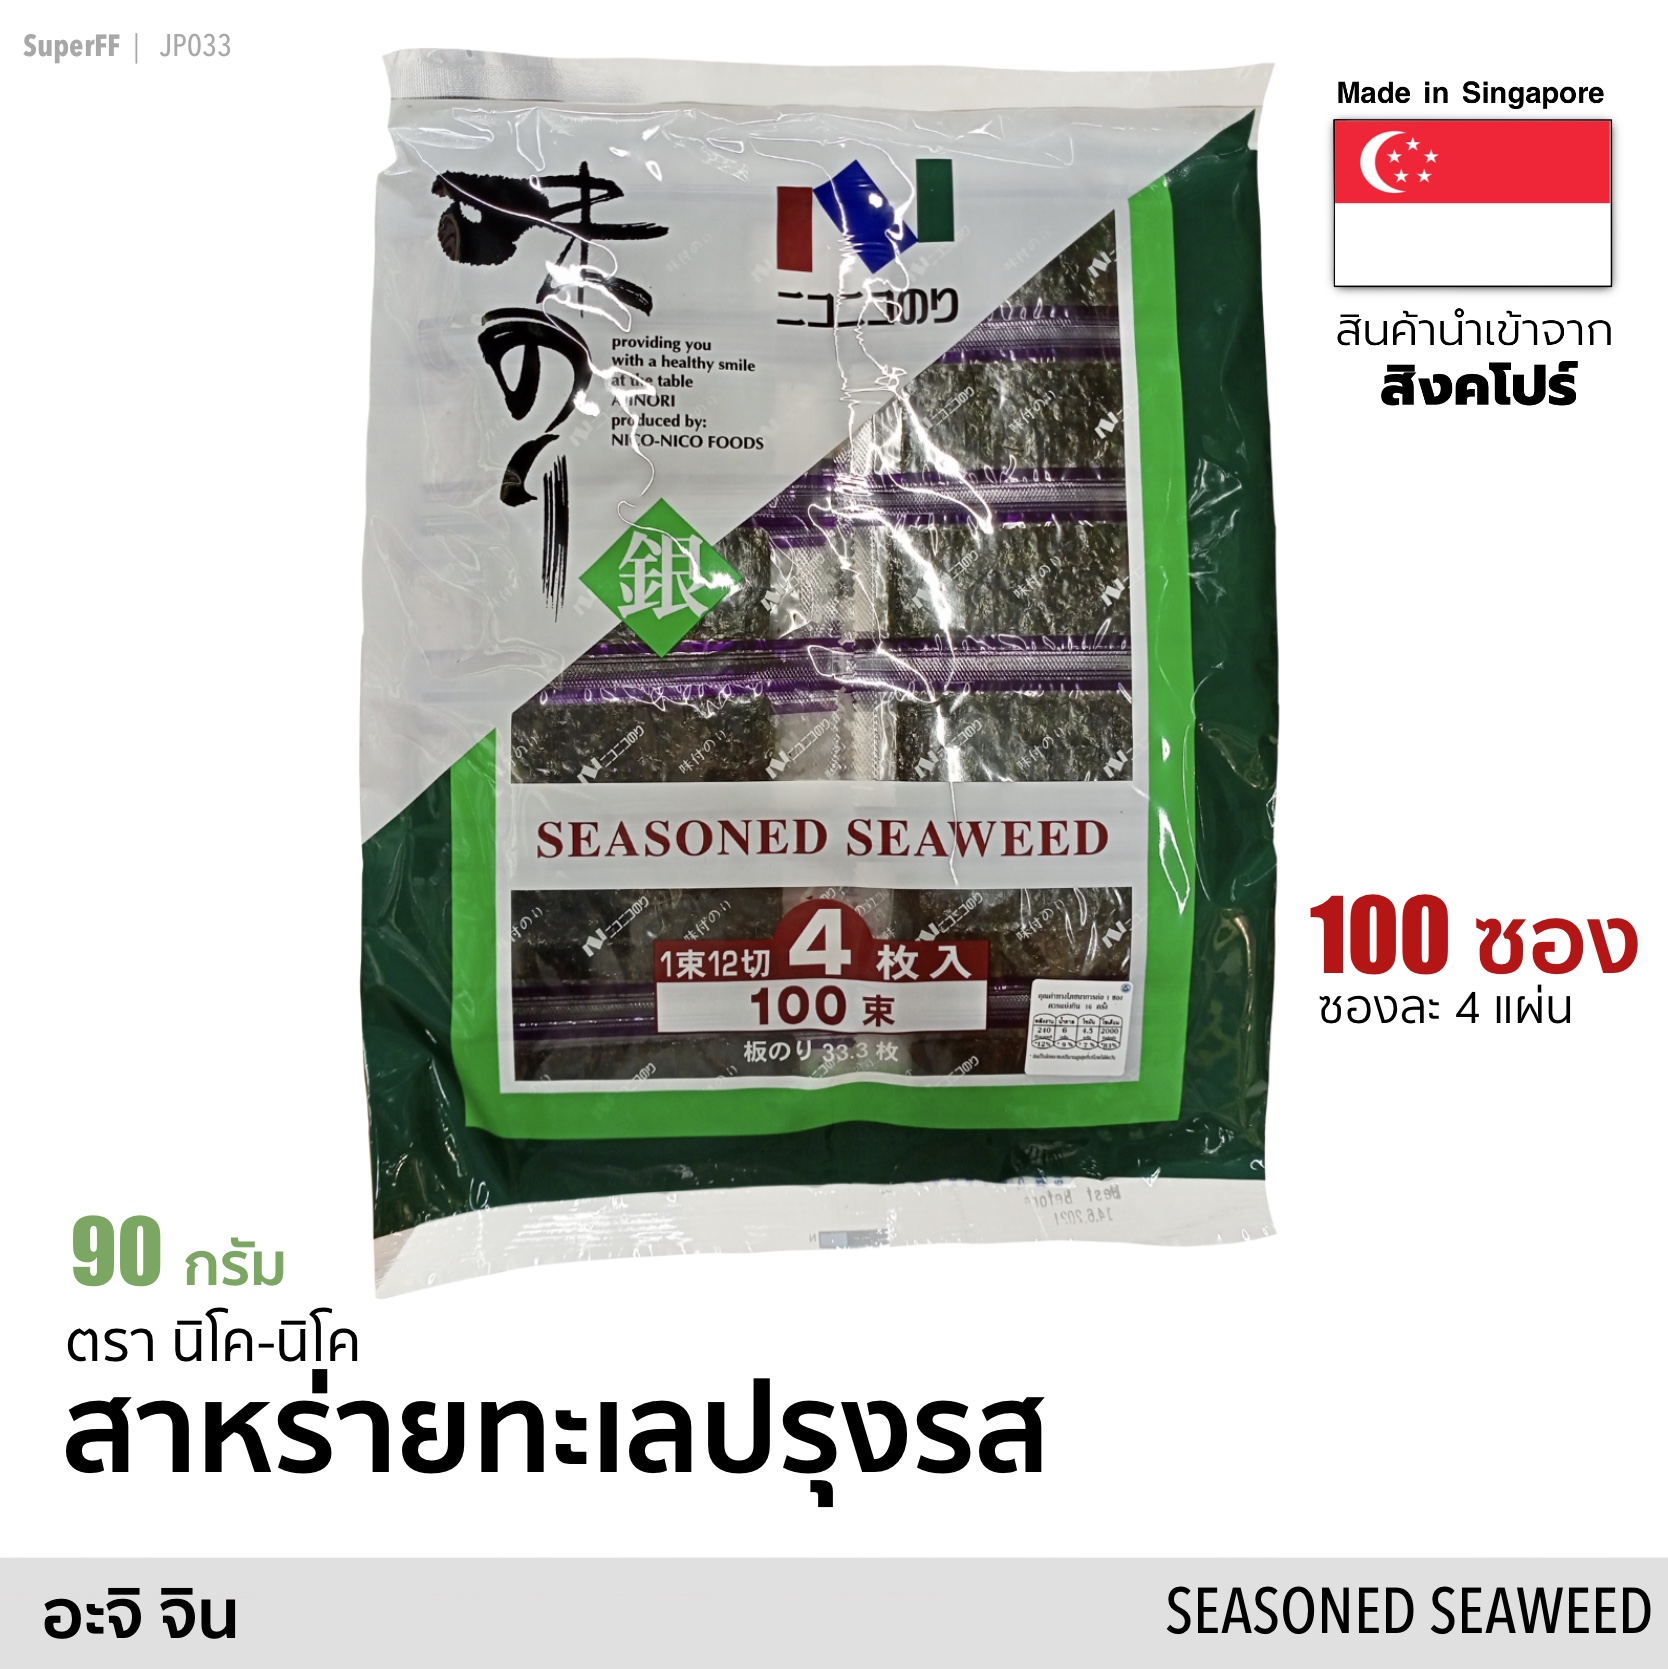 สาหร่ายทะเลปรุงรส แผ่นเล็ก 100 ซอง (อะจิ จินโนริ) 90 กรัม (Exp: 2022/01/26) AJI GIN Seasoned Seaweed (Nico-Nico Brand) อาหารแห้ง สาหร่ายทะเล อบแห้ง สาหร่ายแผ่นญี่ปุ่น